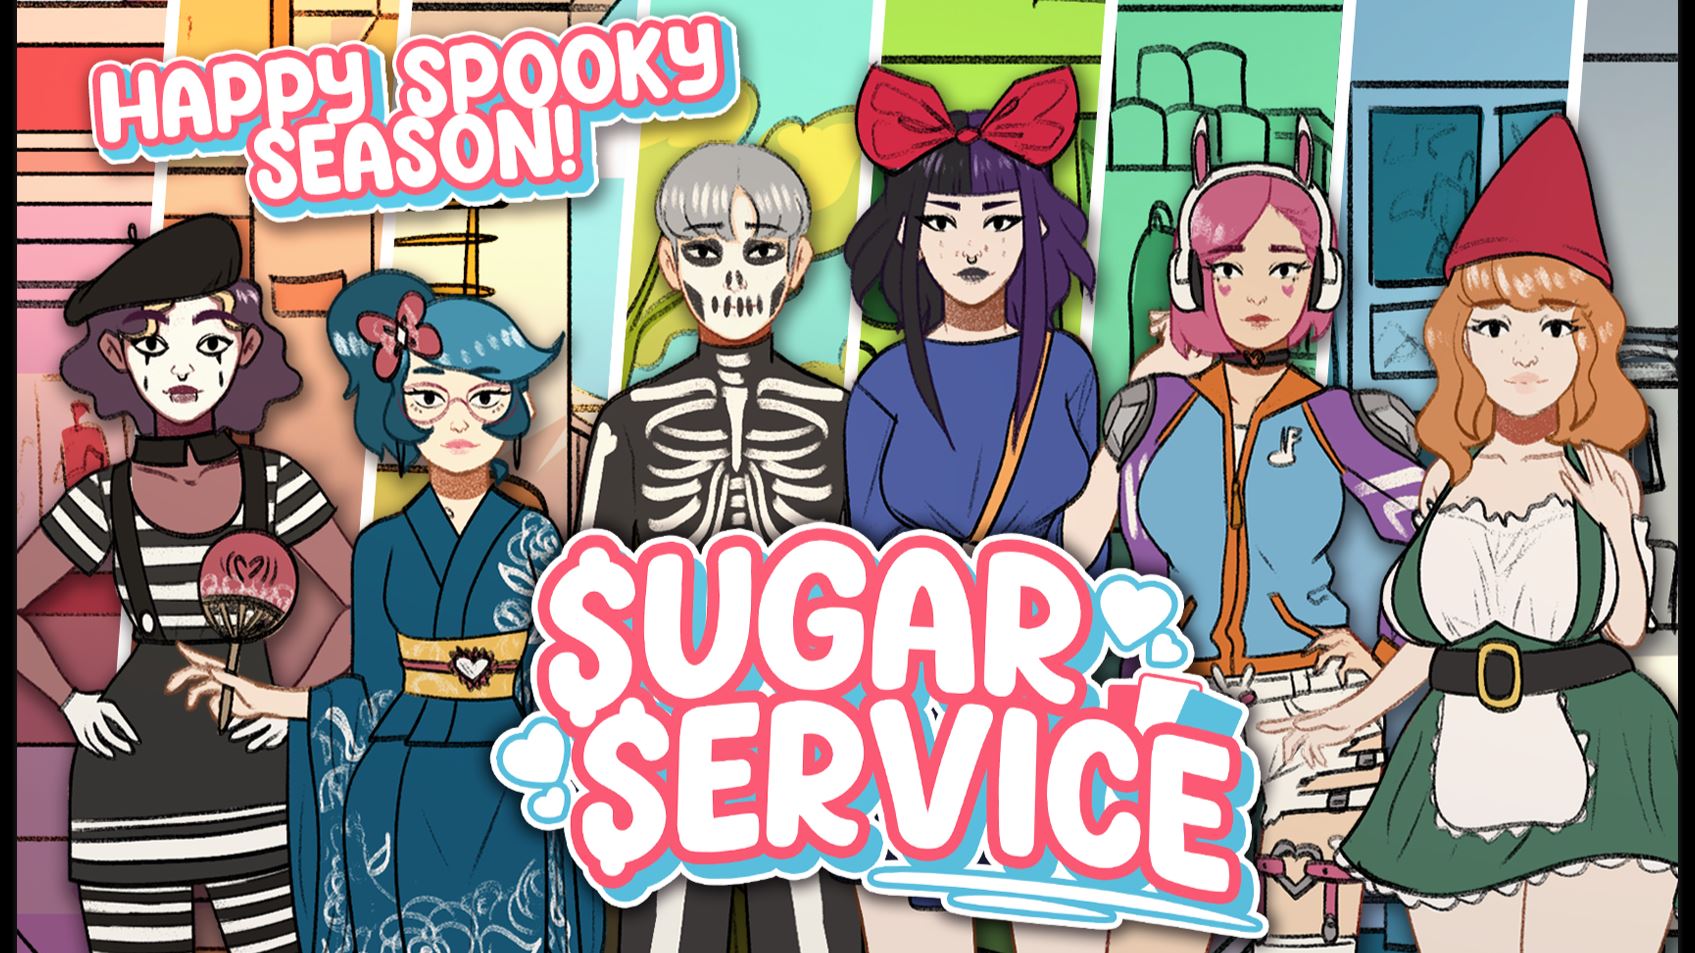 Sugar Service porn xxx game download cover